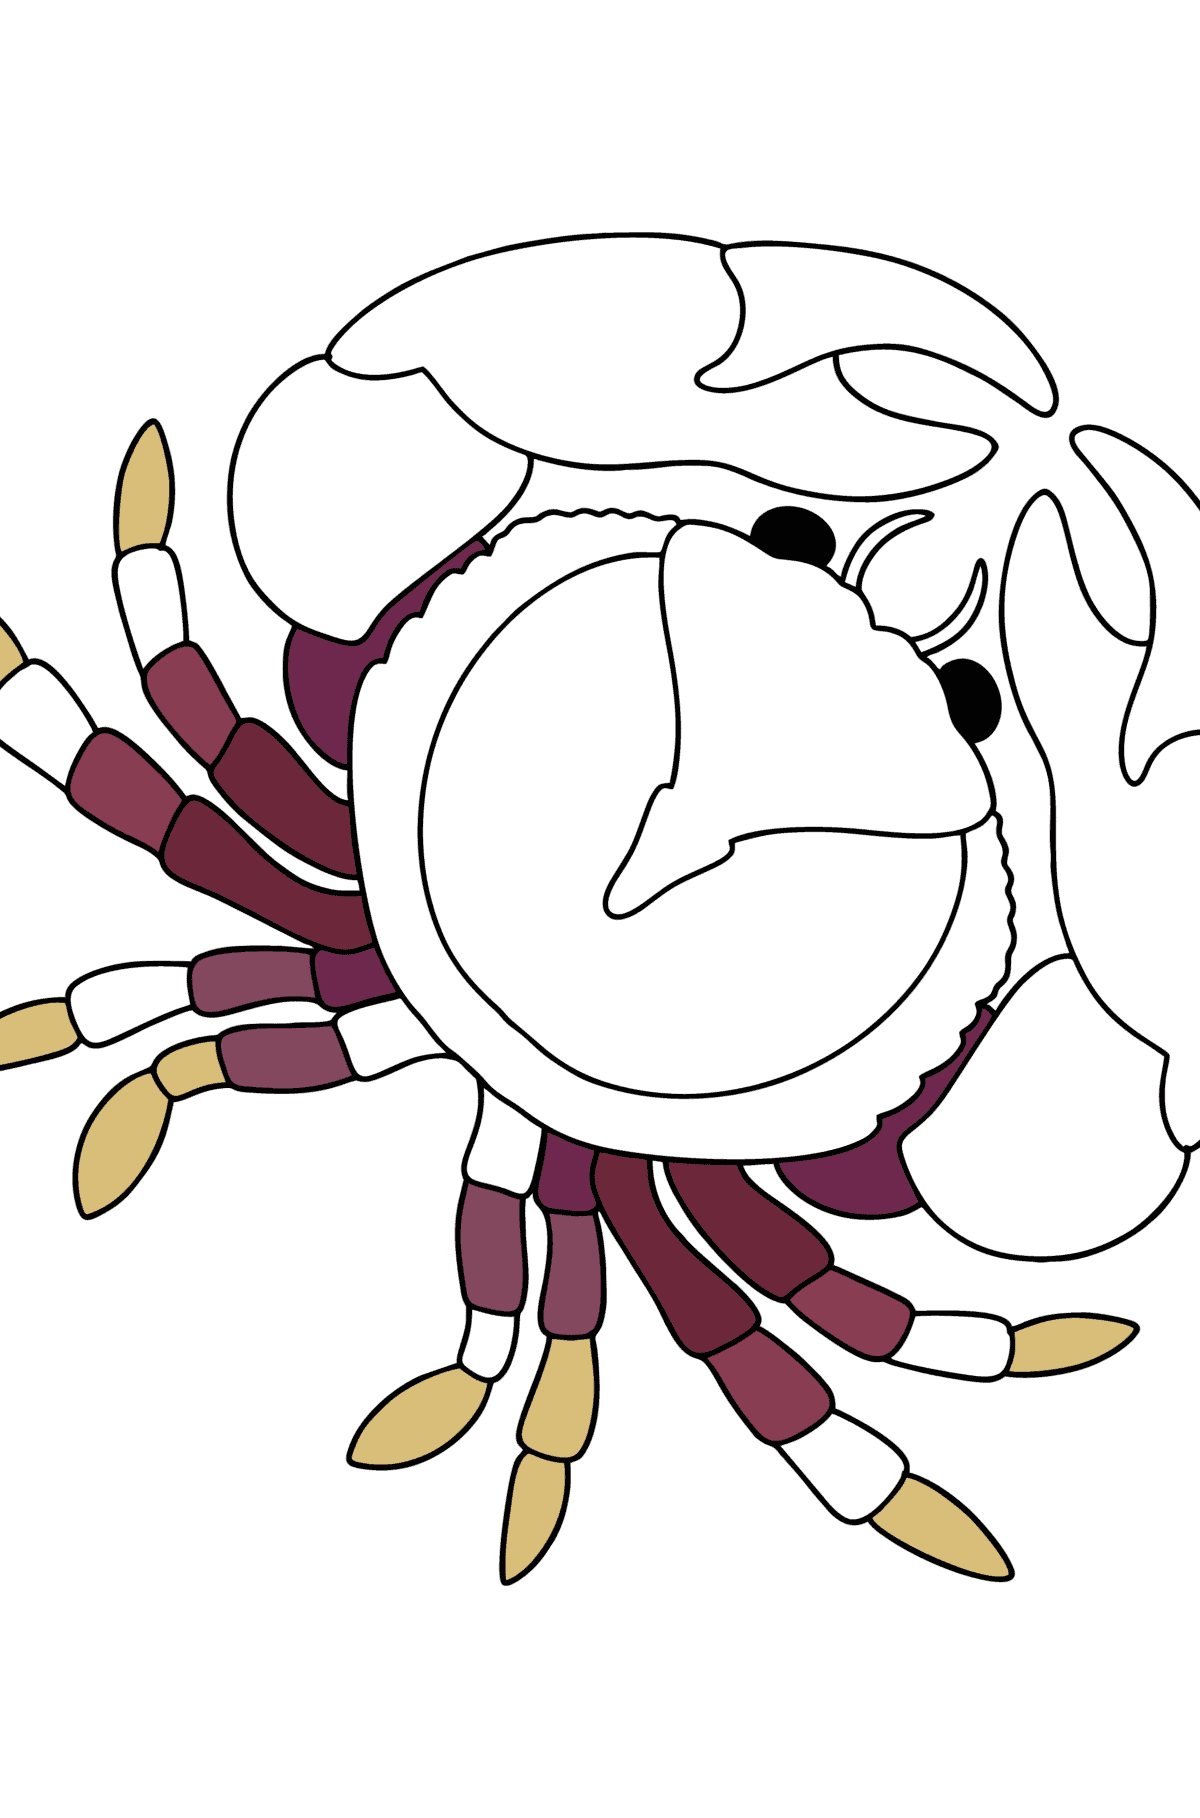 Desenho de Caranguejo do mar para colorir - Imagens para Colorir para Crianças